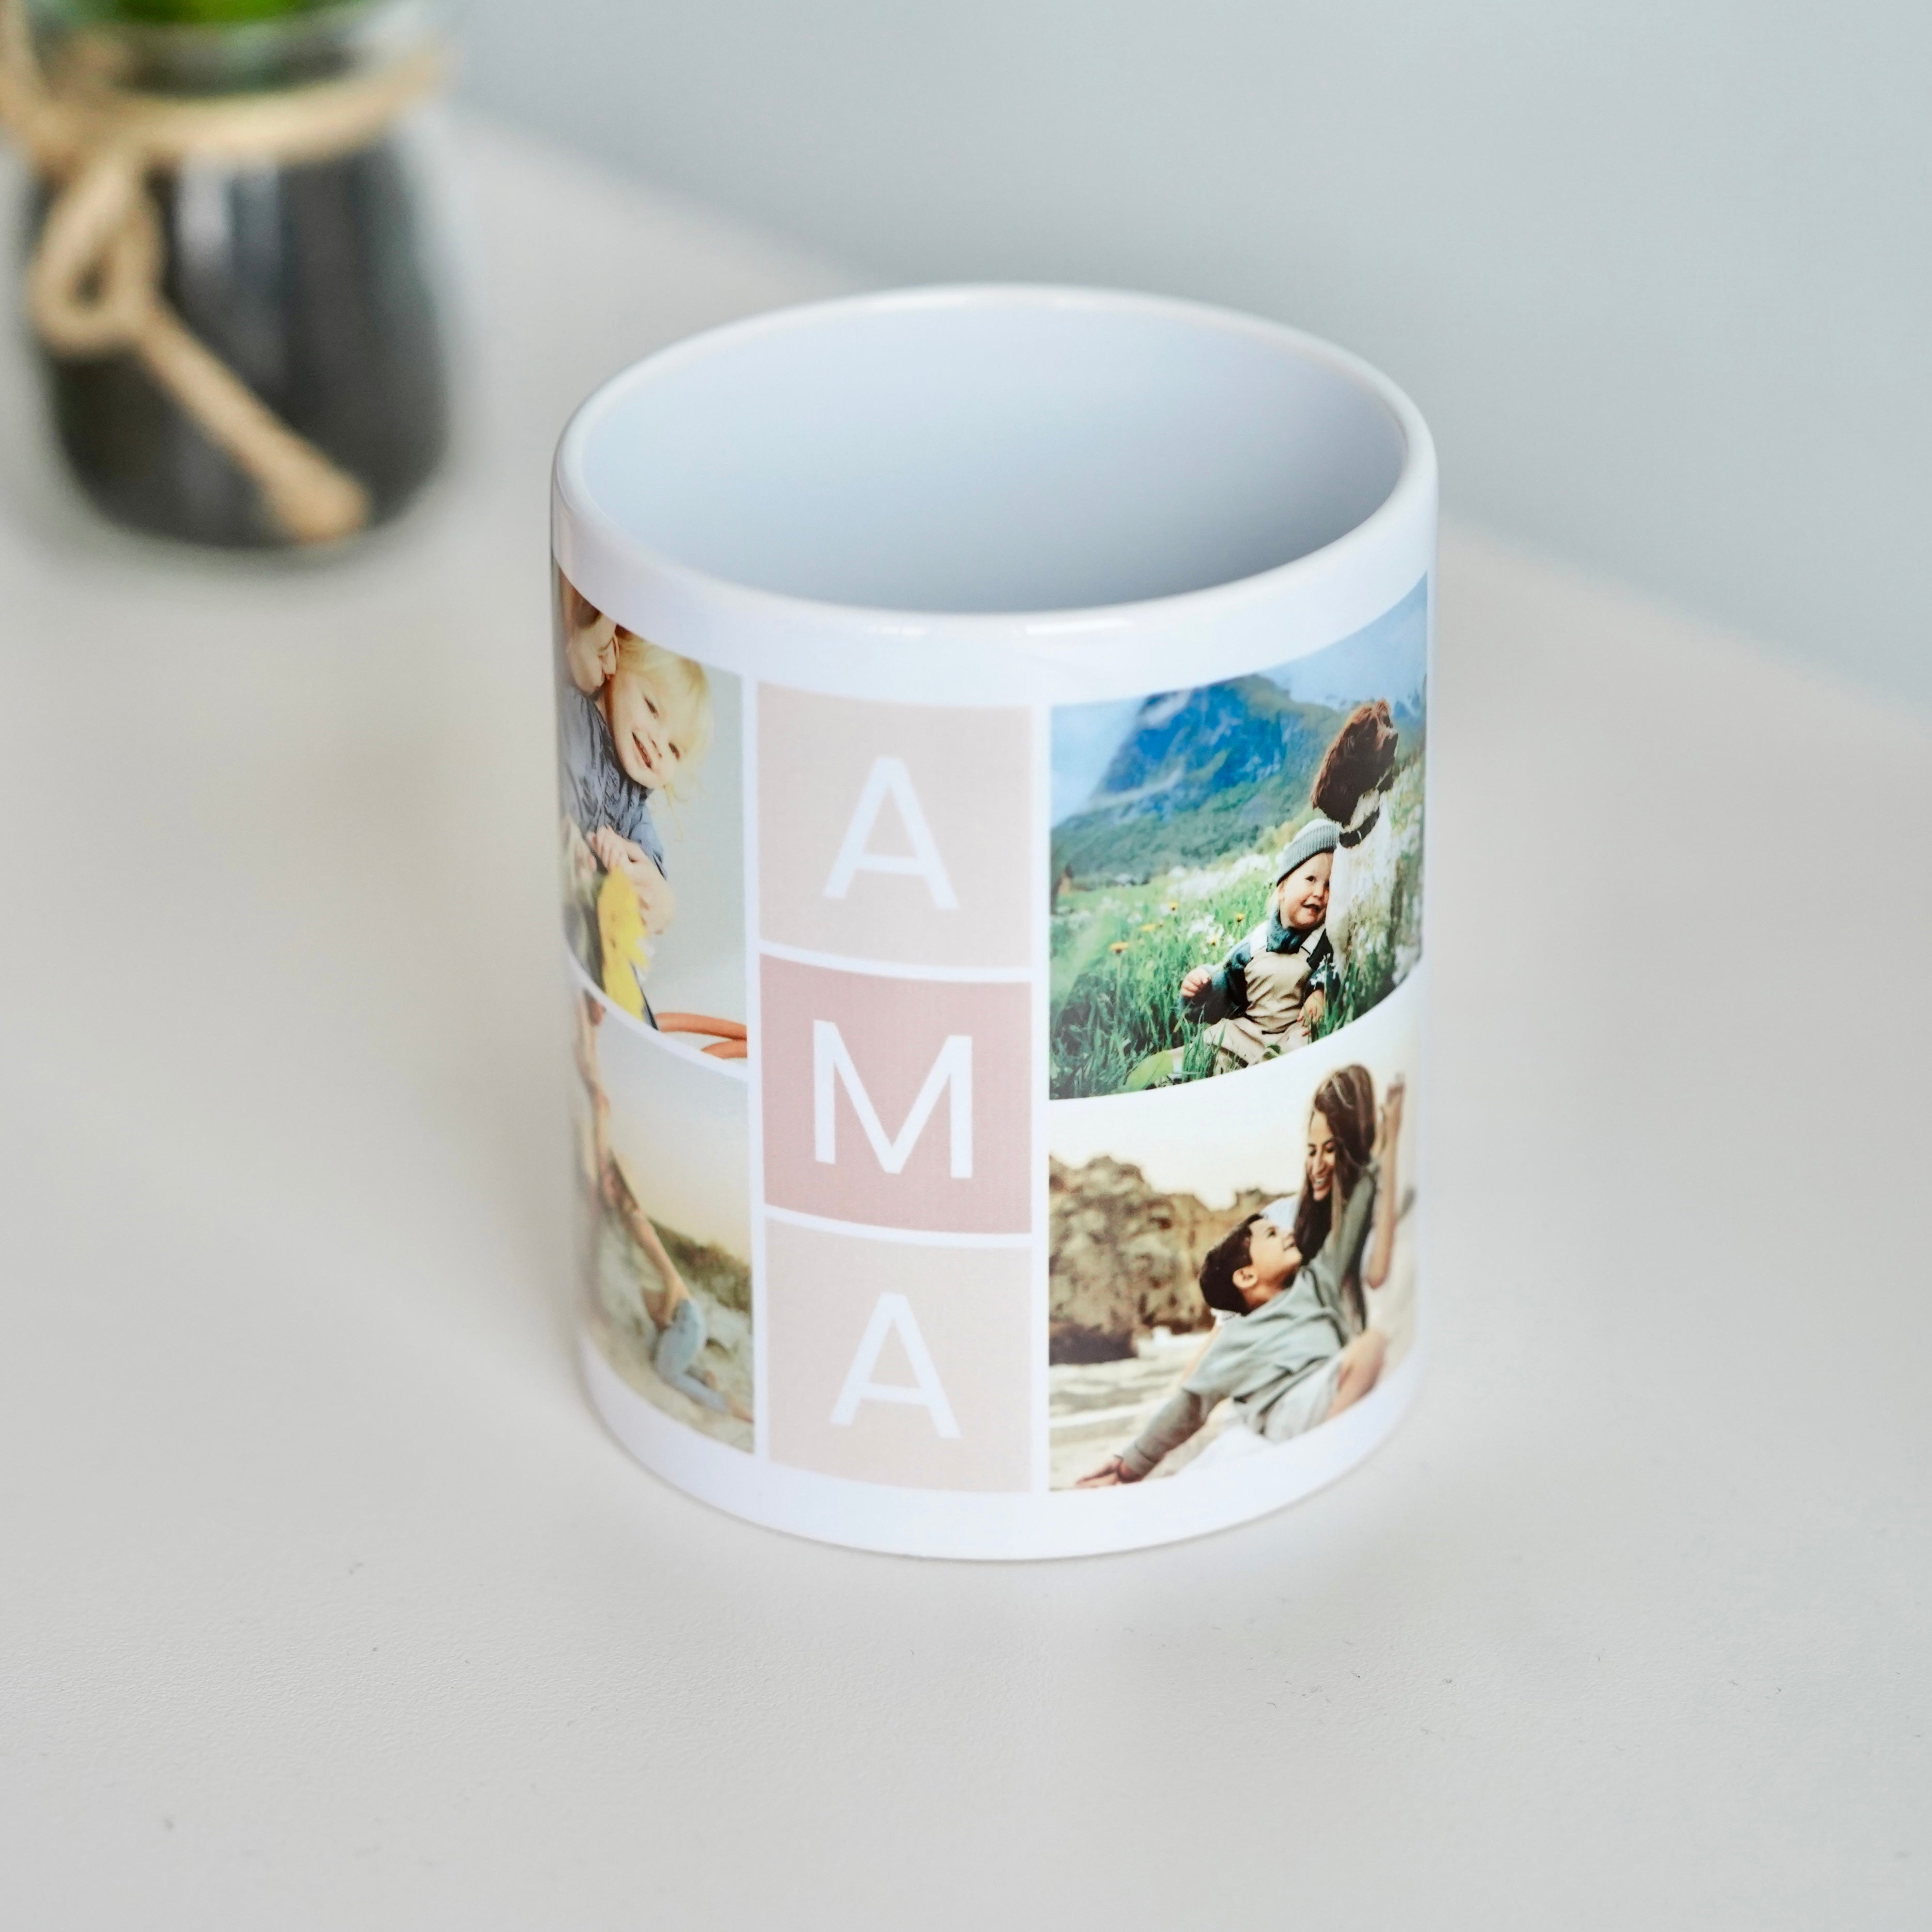 Imagen de una taza personalizada con cuatro fotos y la palabra 'AMA' en el centro,